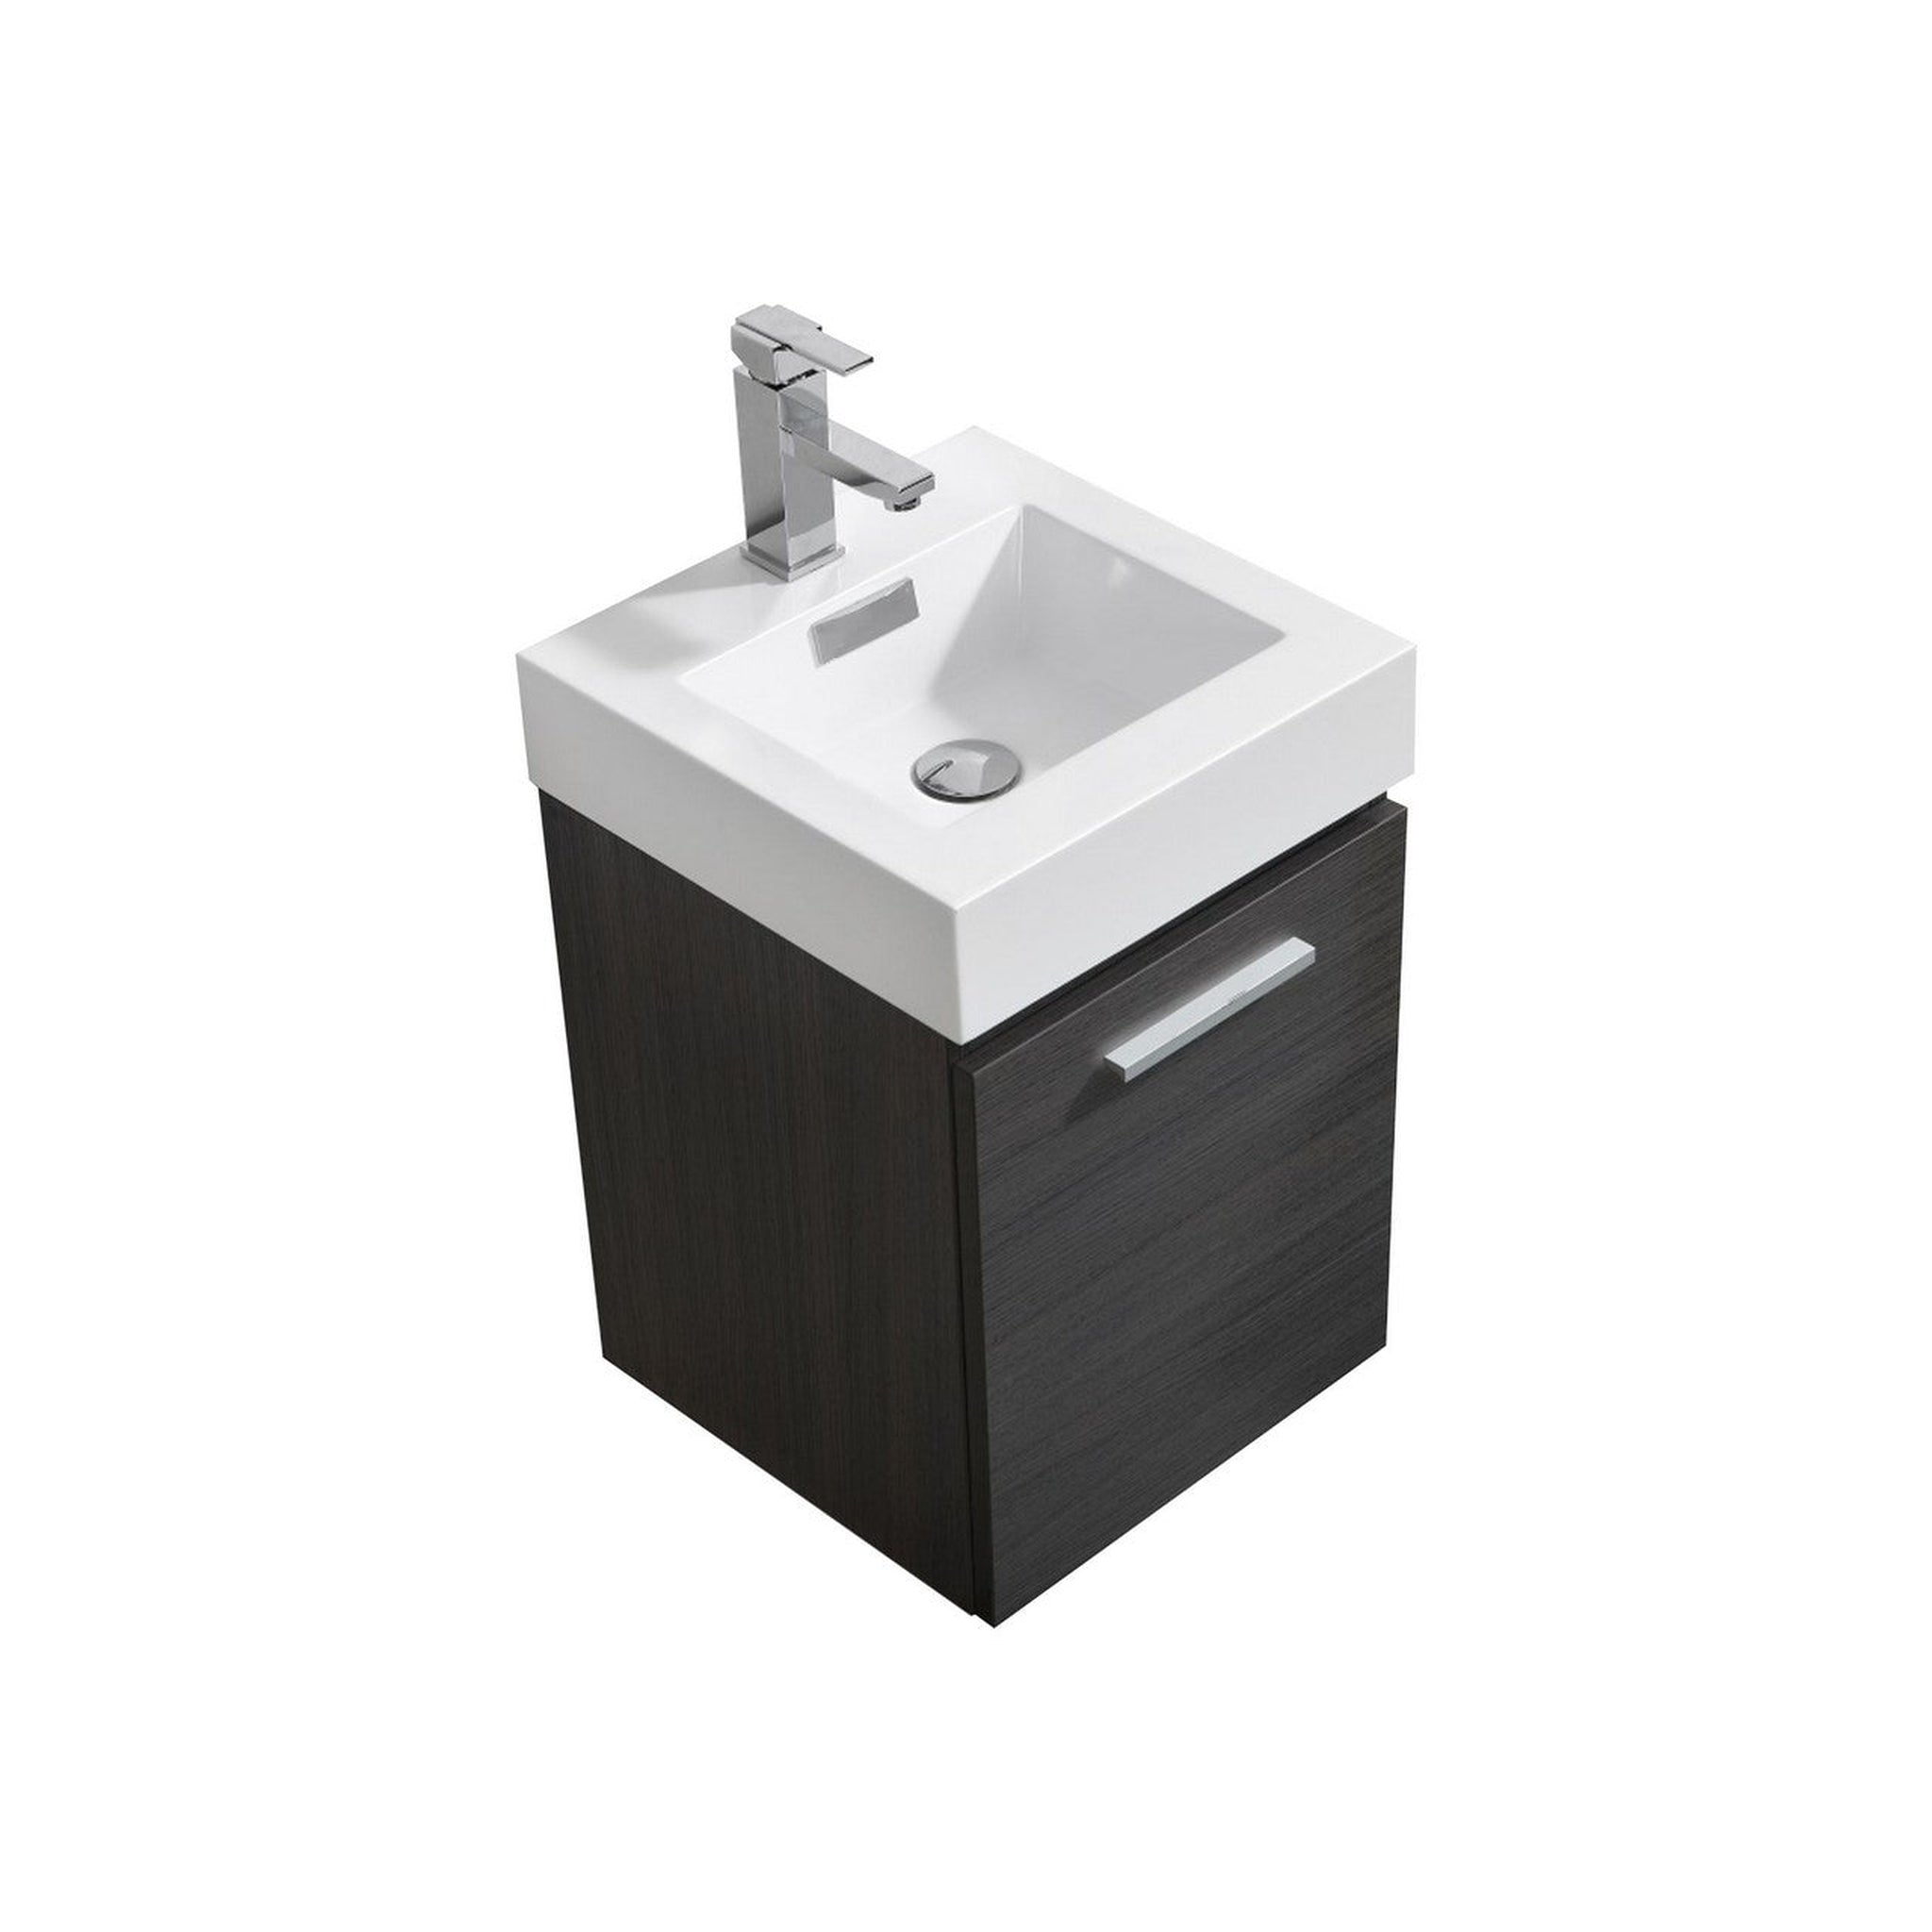 KubeBath, KubeBath Bliss 16" High Gloss Gray Oak Wall-Mounted Modern Bathroom Vanity With Single Integrated Acrylic Sink With Overflow